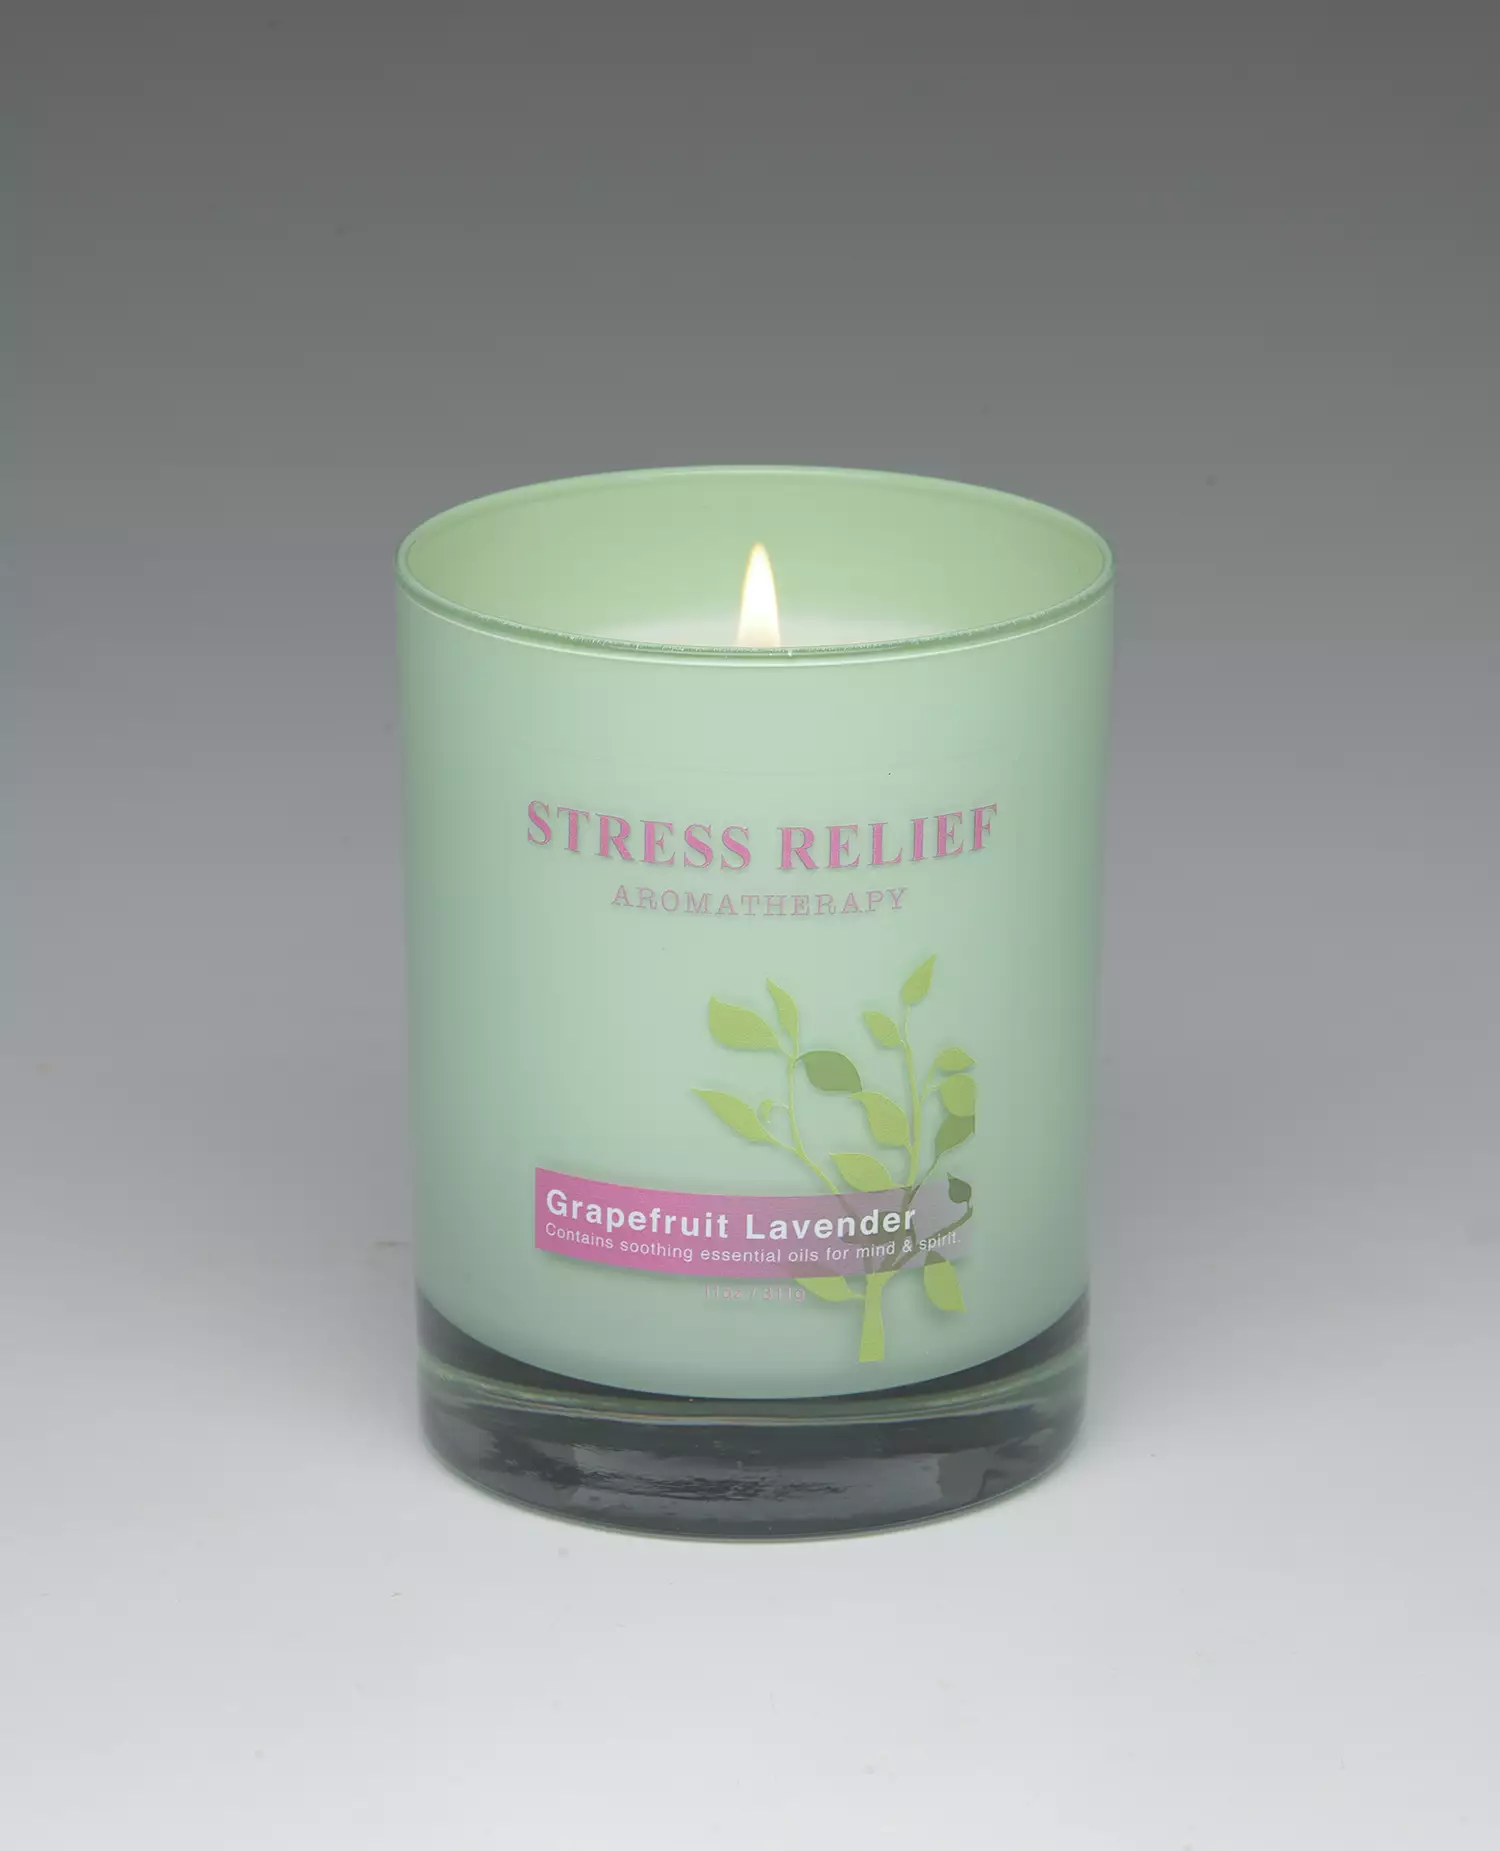 Grapefruit Lavender – 11oz scented candle burning